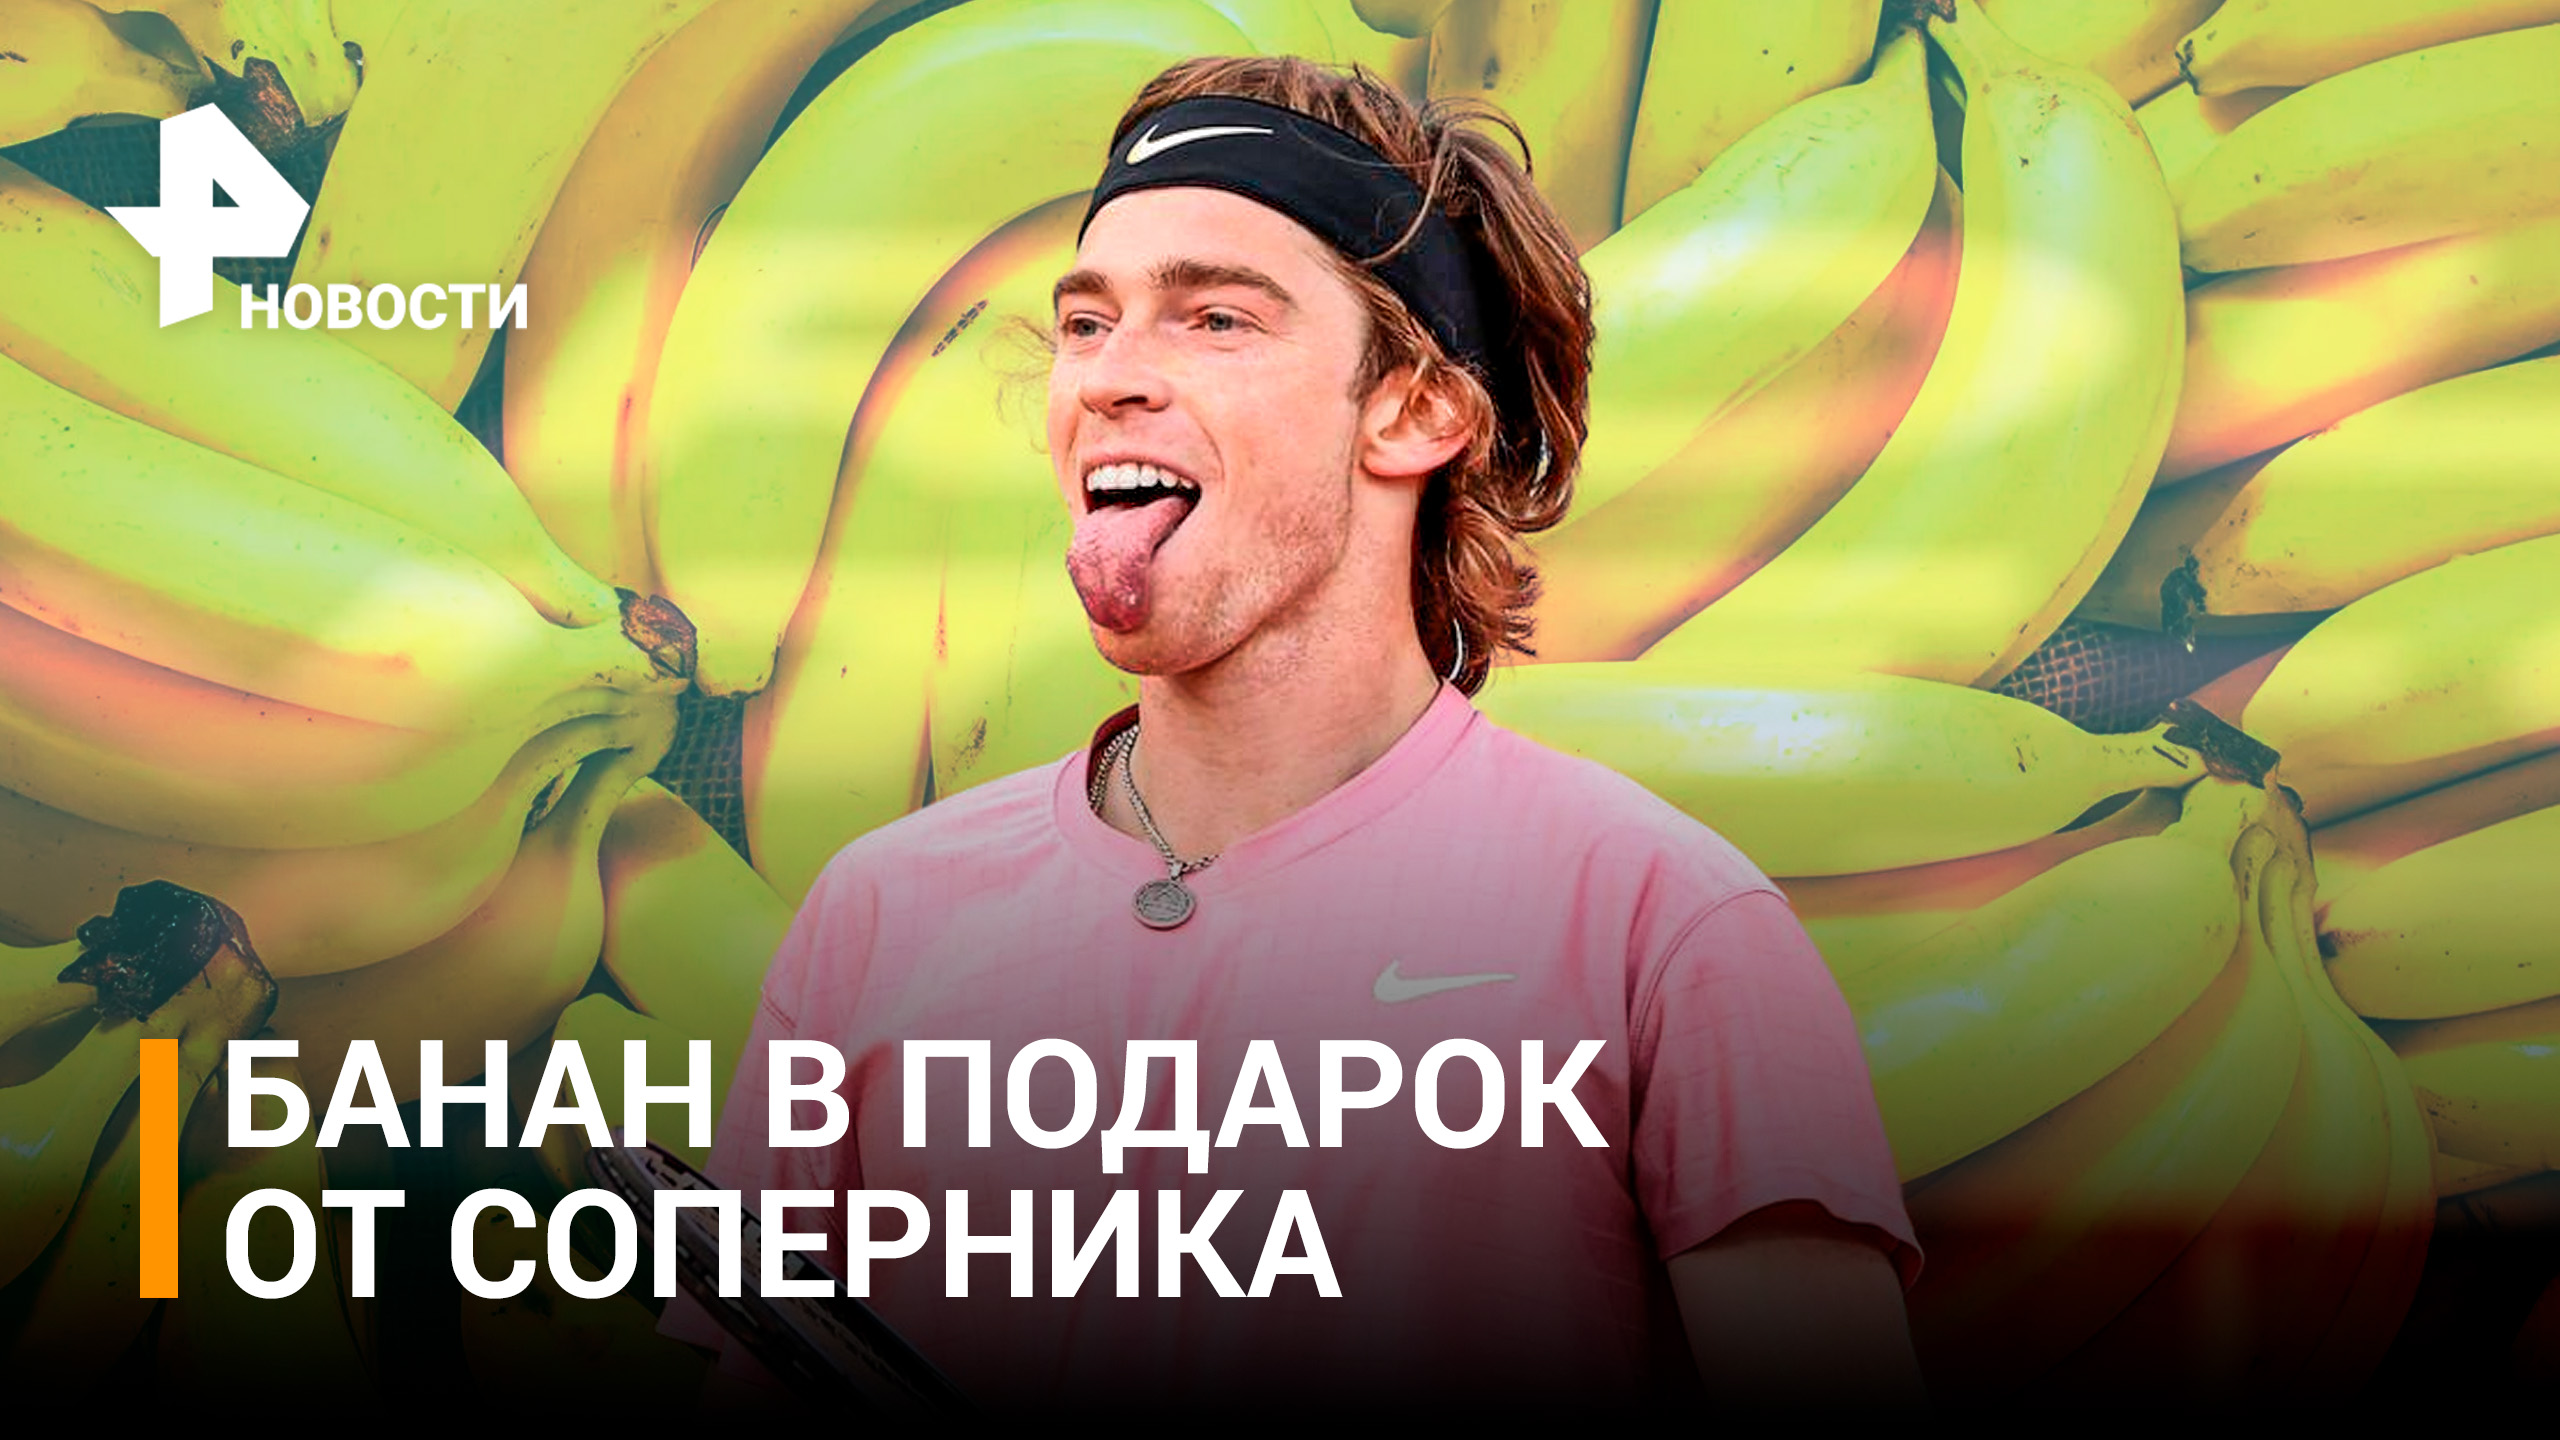 Рублев получил от соперника в подарок банан на Australian Open / РЕН Новости